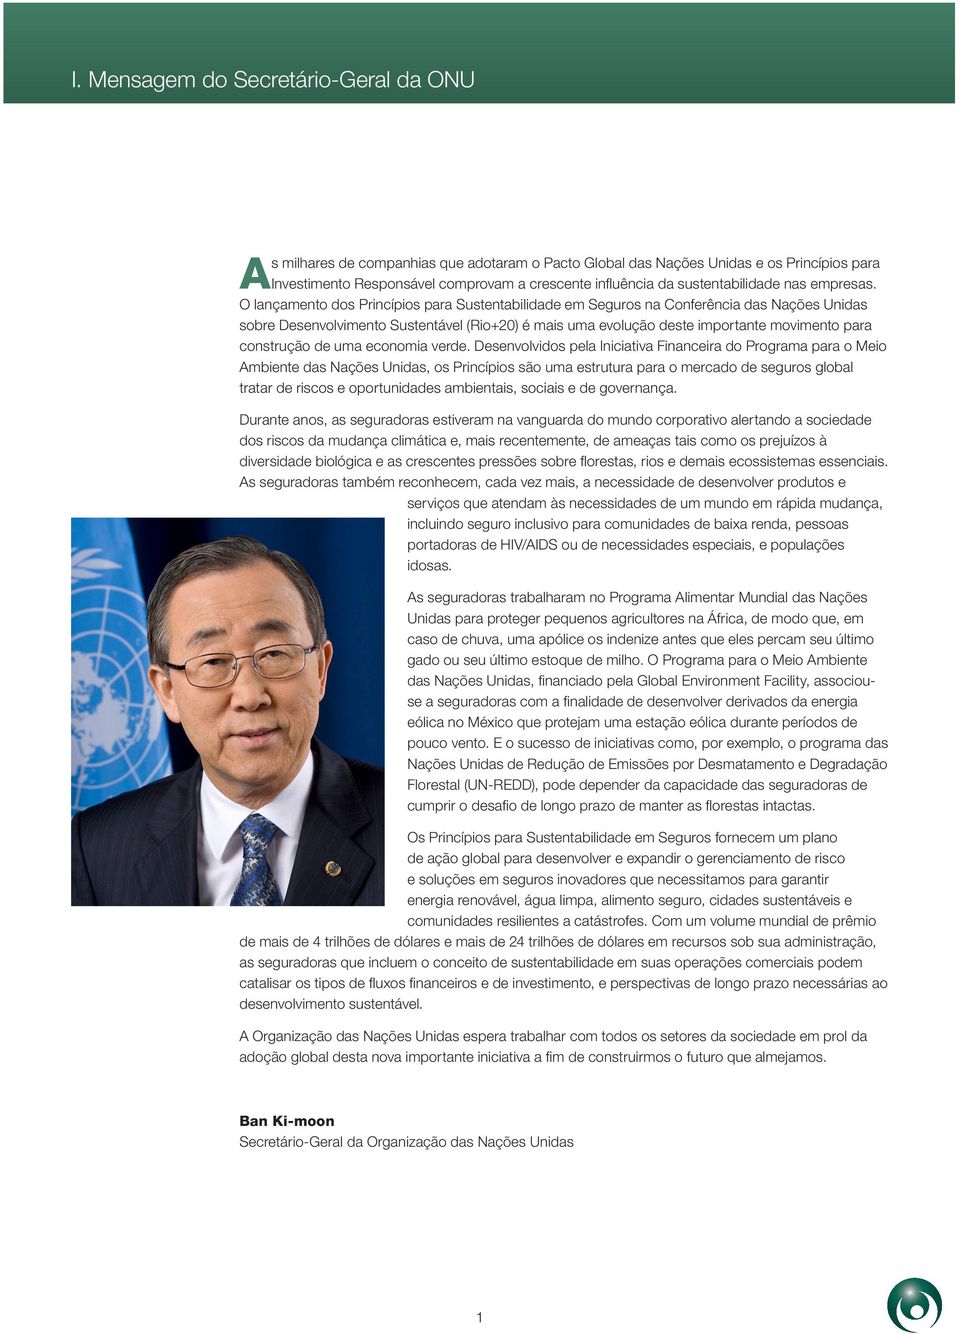 O lançamento dos Princípios para Sustentabilidade em Seguros na Conferência das Nações Unidas sobre Desenvolvimento Sustentável (Rio+20) é mais uma evolução deste importante movimento para construção